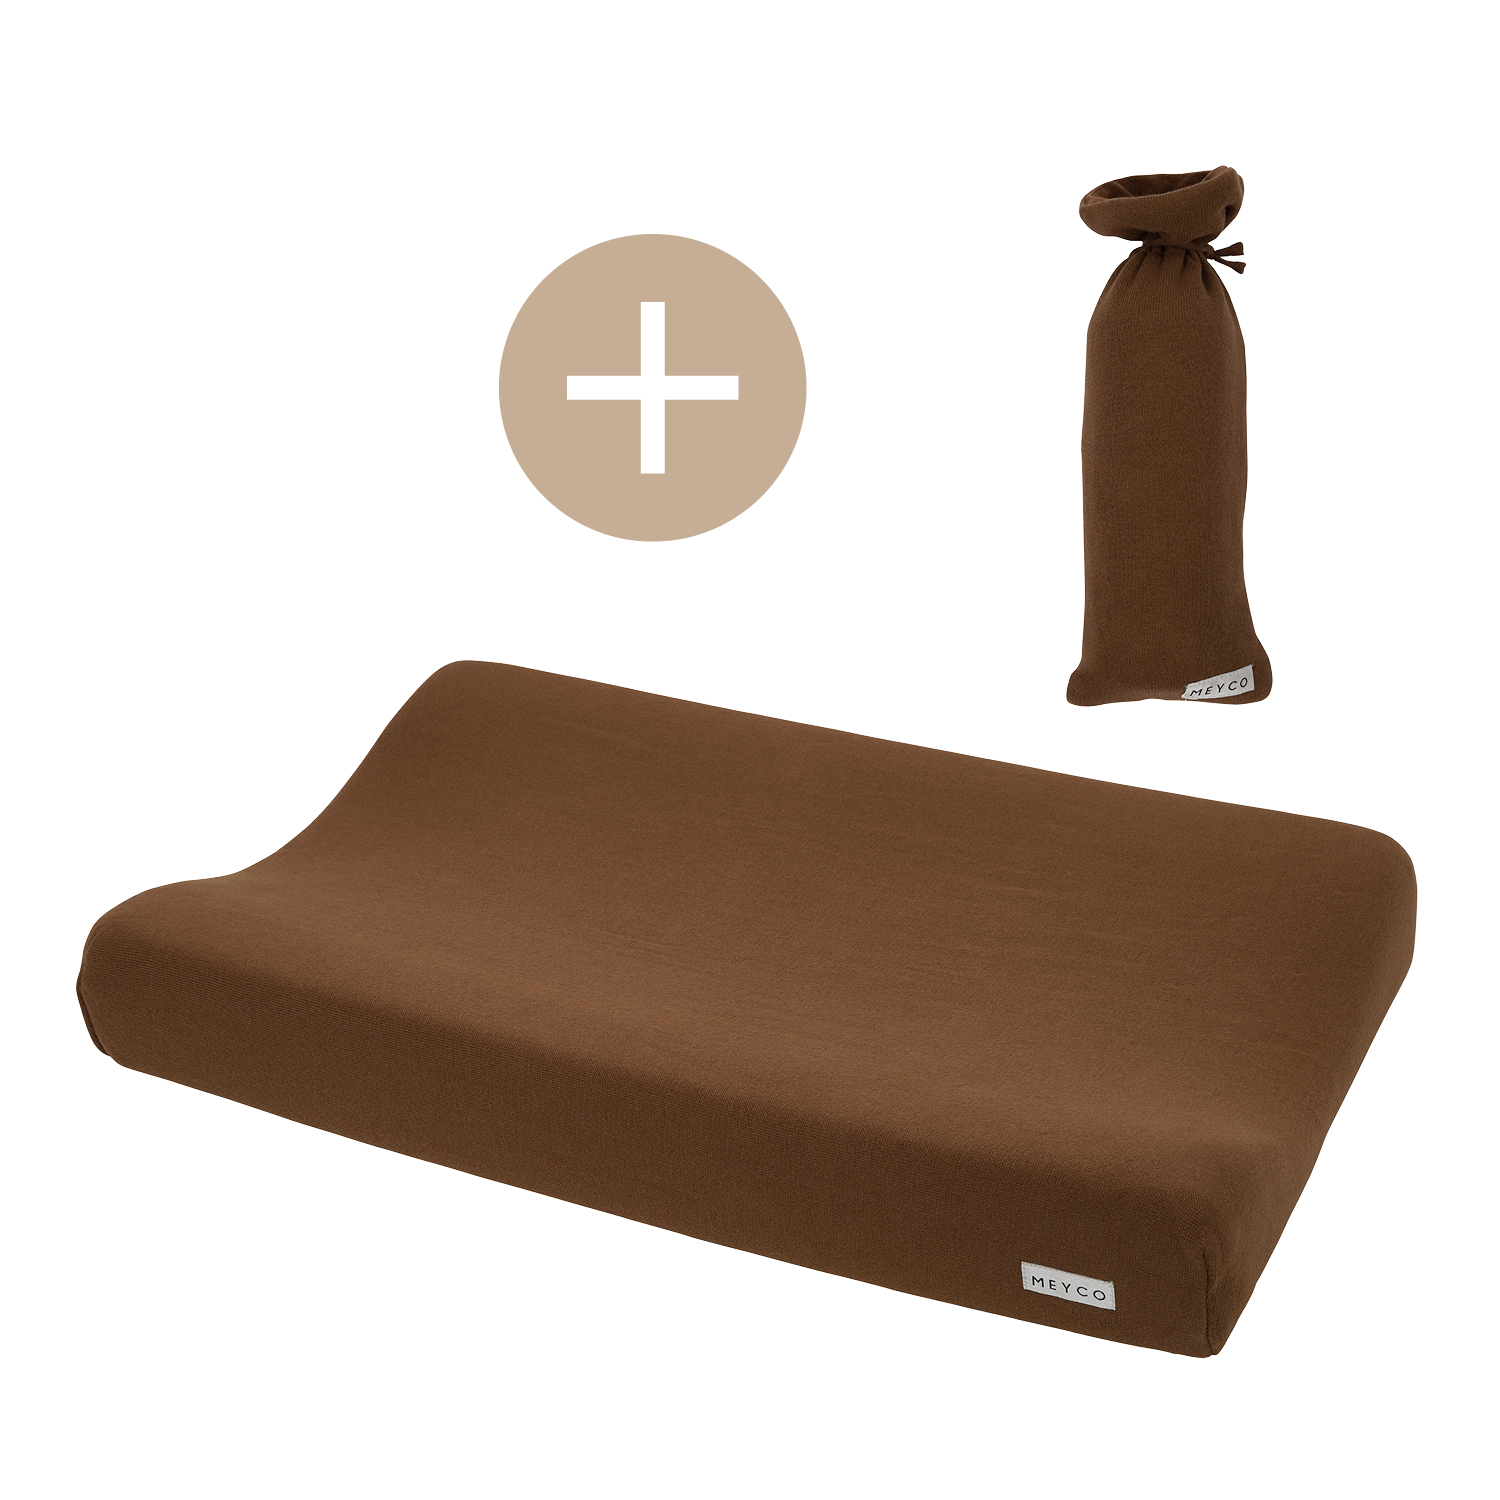 Wickelauflagenbezug + Wärmflaschenbezug Knit Basic - chocolate - 50x70cm